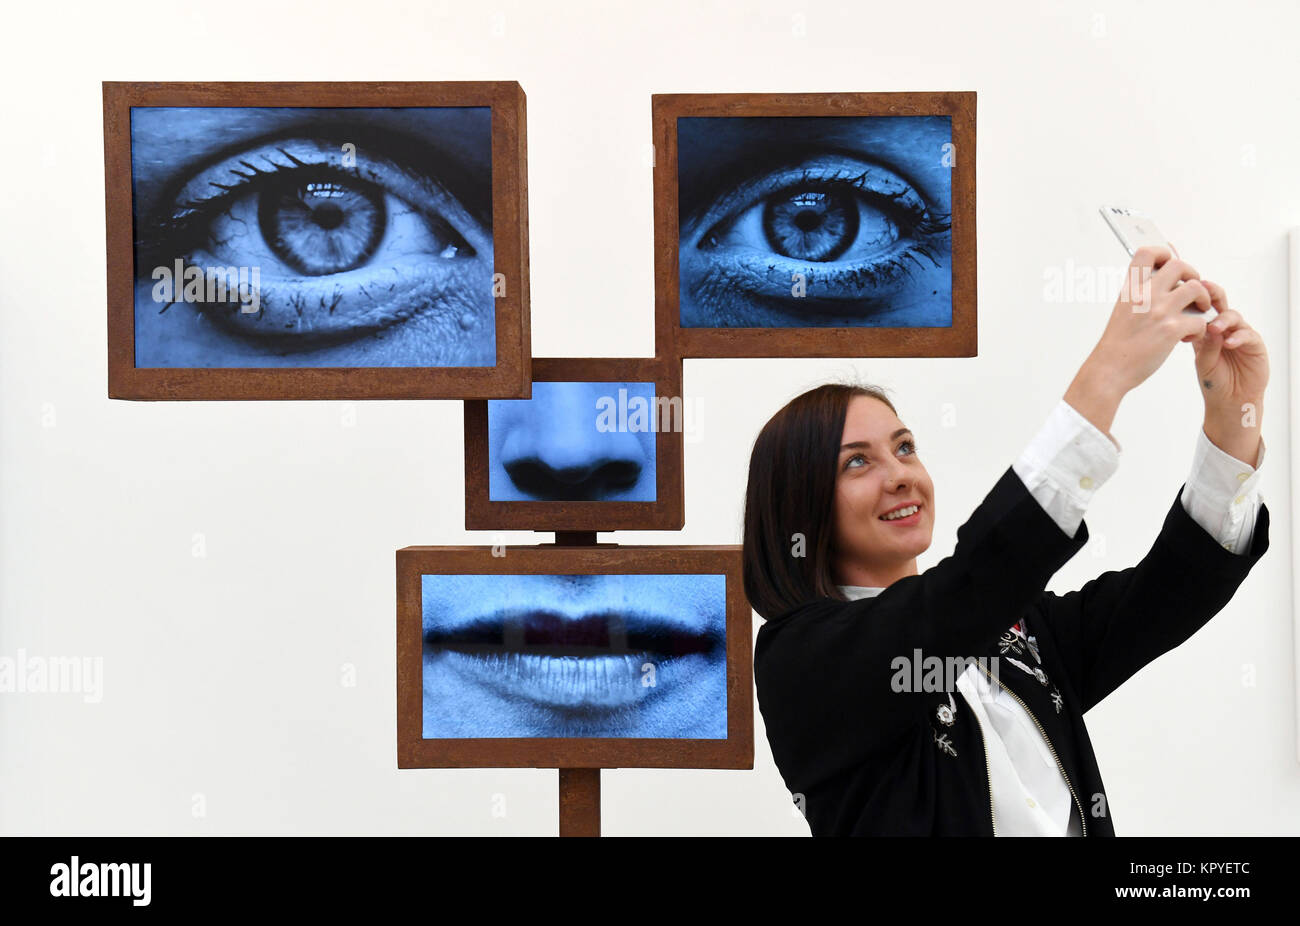 Rückblick auf das Jahr 2017: März: ein Besucher nimmt eine selfie vor einer Installation während einer Pressekonferenz an der Selfie zum Ausdruck des Selbst Ausstellung in der Saatchi Gallery in London, das Blicke auf die Geschichte der selfie vom Hochformat Künstler bis hin zu modernen selfies. Stockfoto